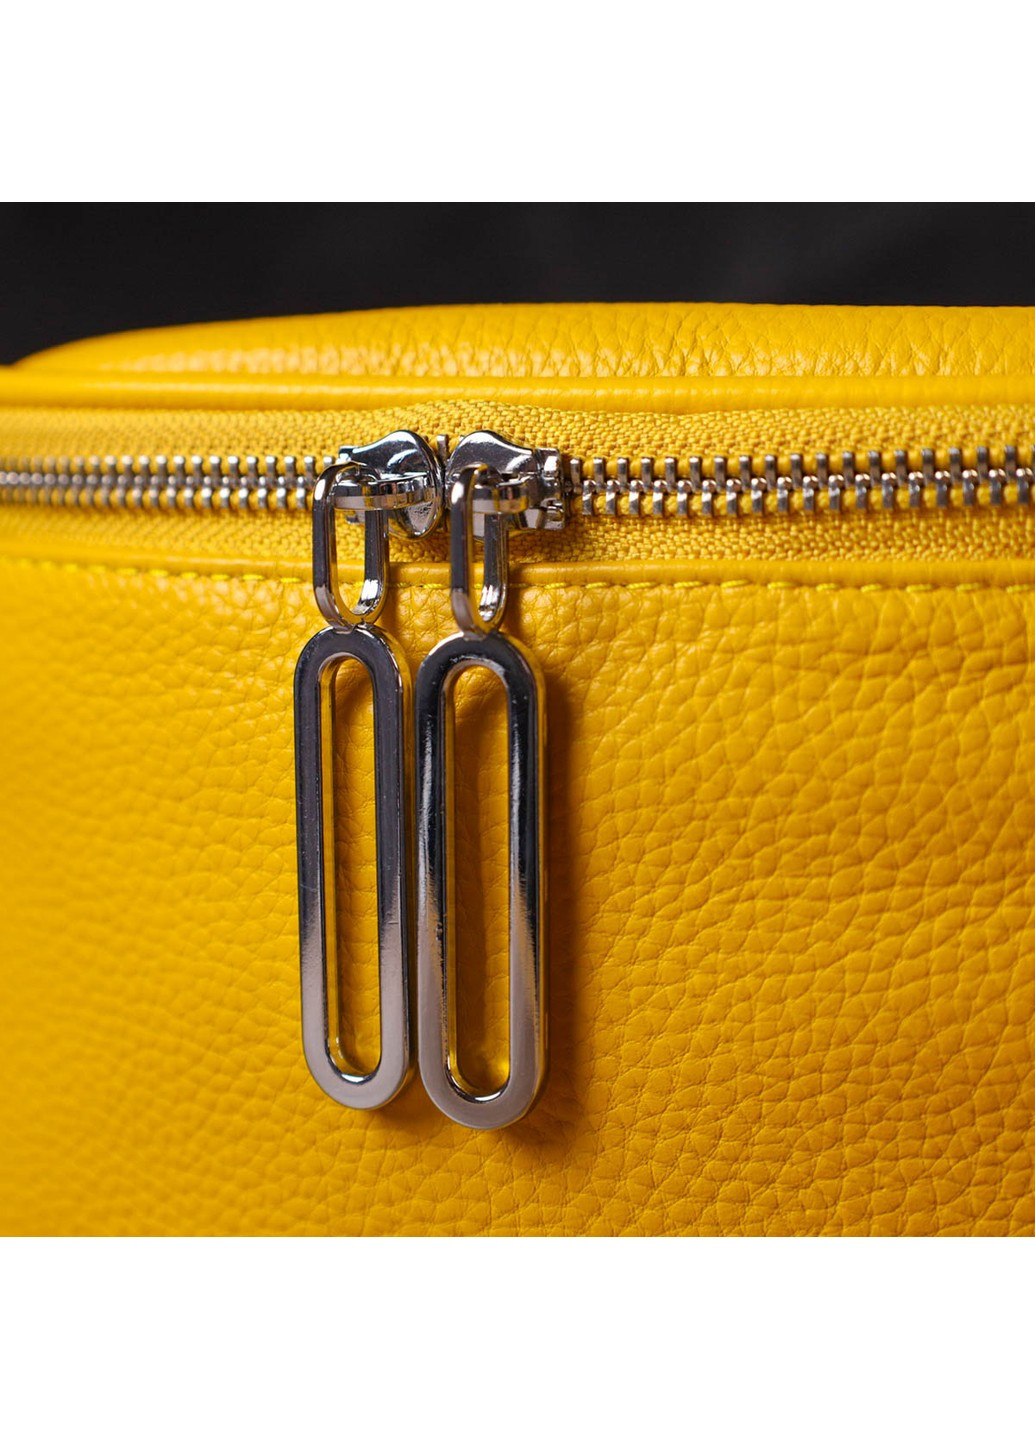 Яркая женская сумка через плечо из натуральной кожи 22116 Желтая Vintage (260359795)